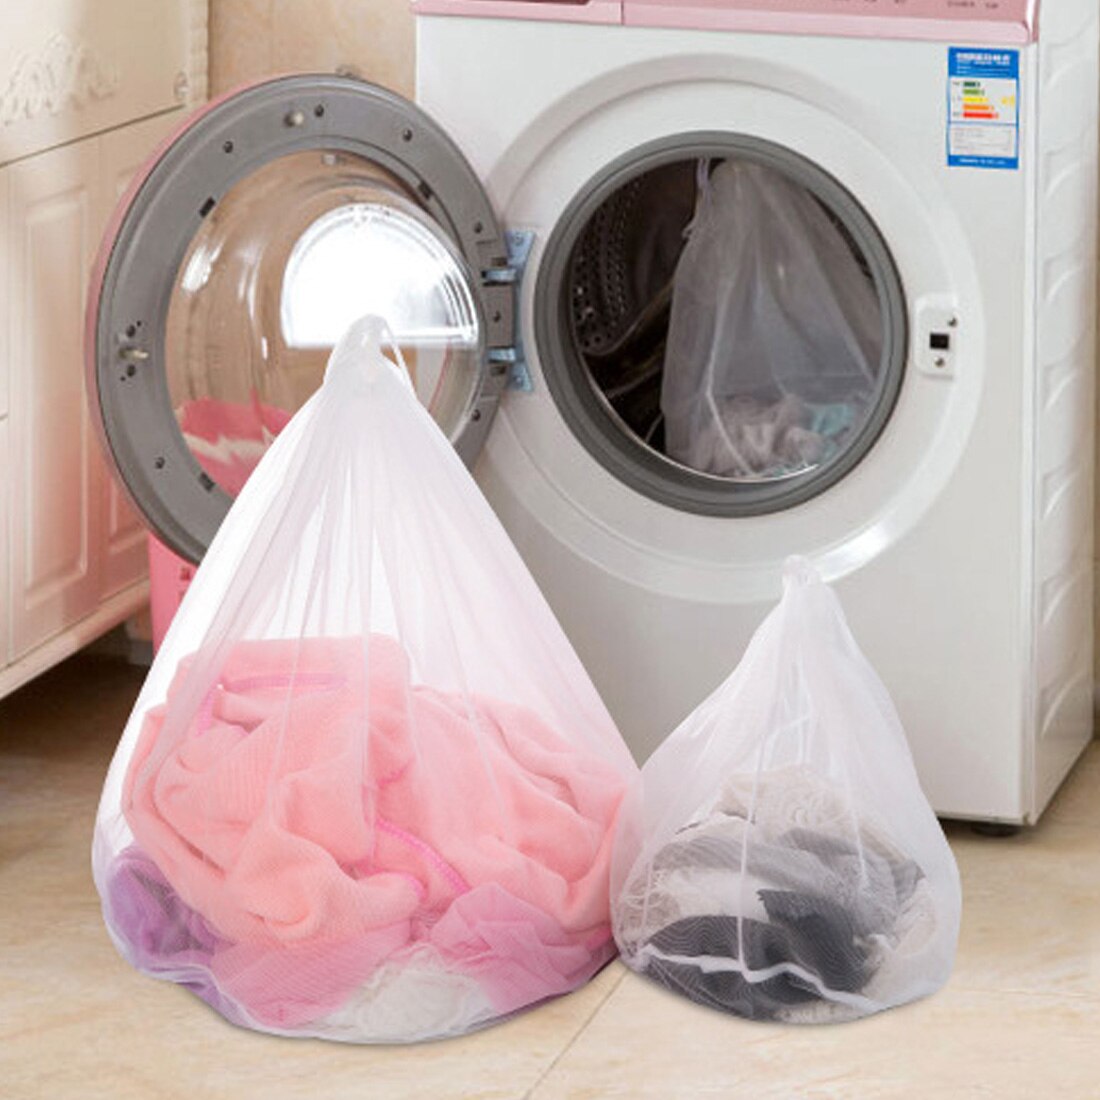 3 størrelser vasketøjspose vaskeposer til sko undertøj bh sko beskidt tøj luftning tørt værktøj lrtyvaskepose beskyttende arrangør